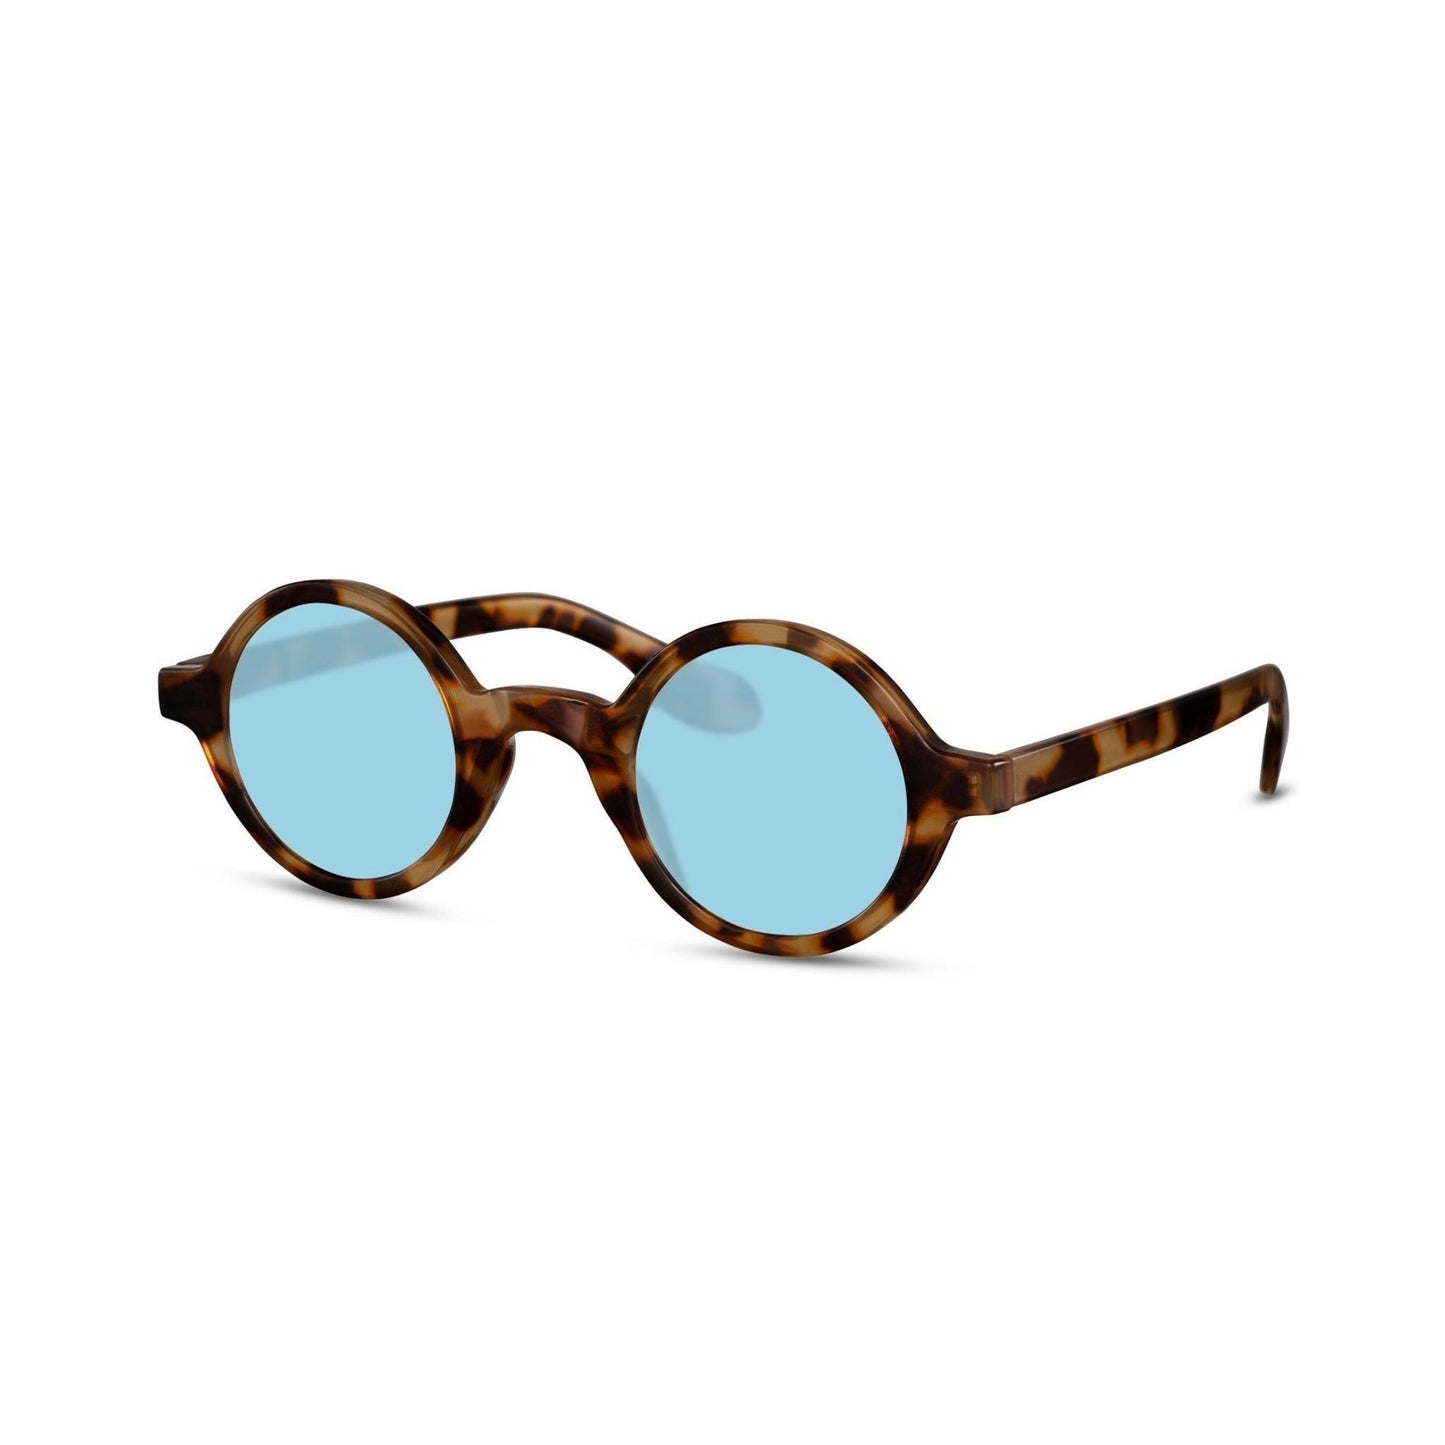 Στρογγυλά Γυαλιά Ηλίου Aurora της Exposure Sunglasses με προστασία UV400 σε καφέ χρώμα σκελετού και μπλε φακό. Πλάγια προβολή